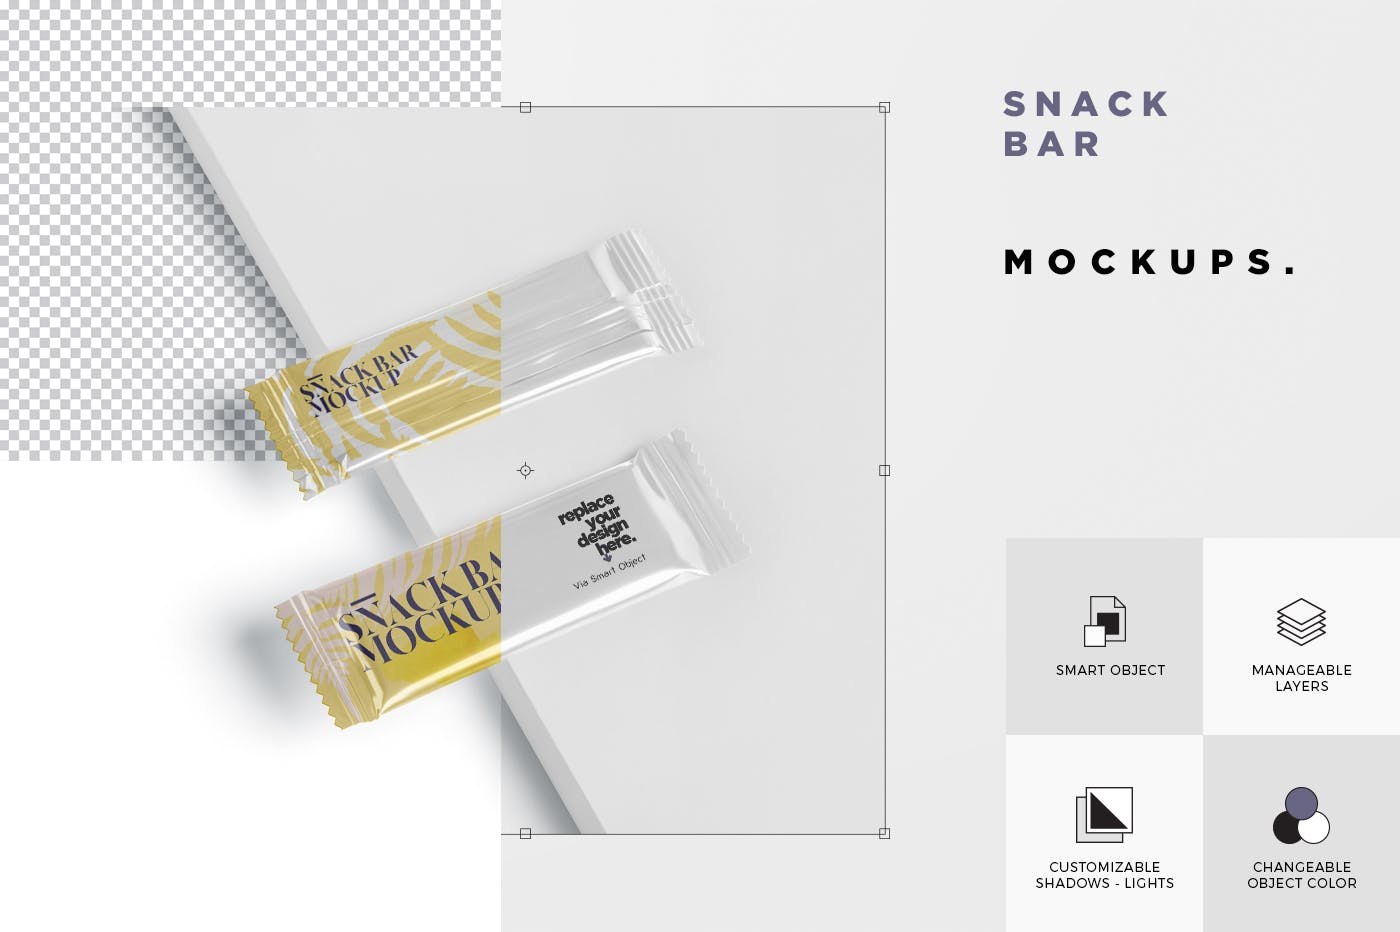 零食糖果包装袋设计效果图素材库精选 Snack Bar Mockup – Slim Rectangular插图(6)